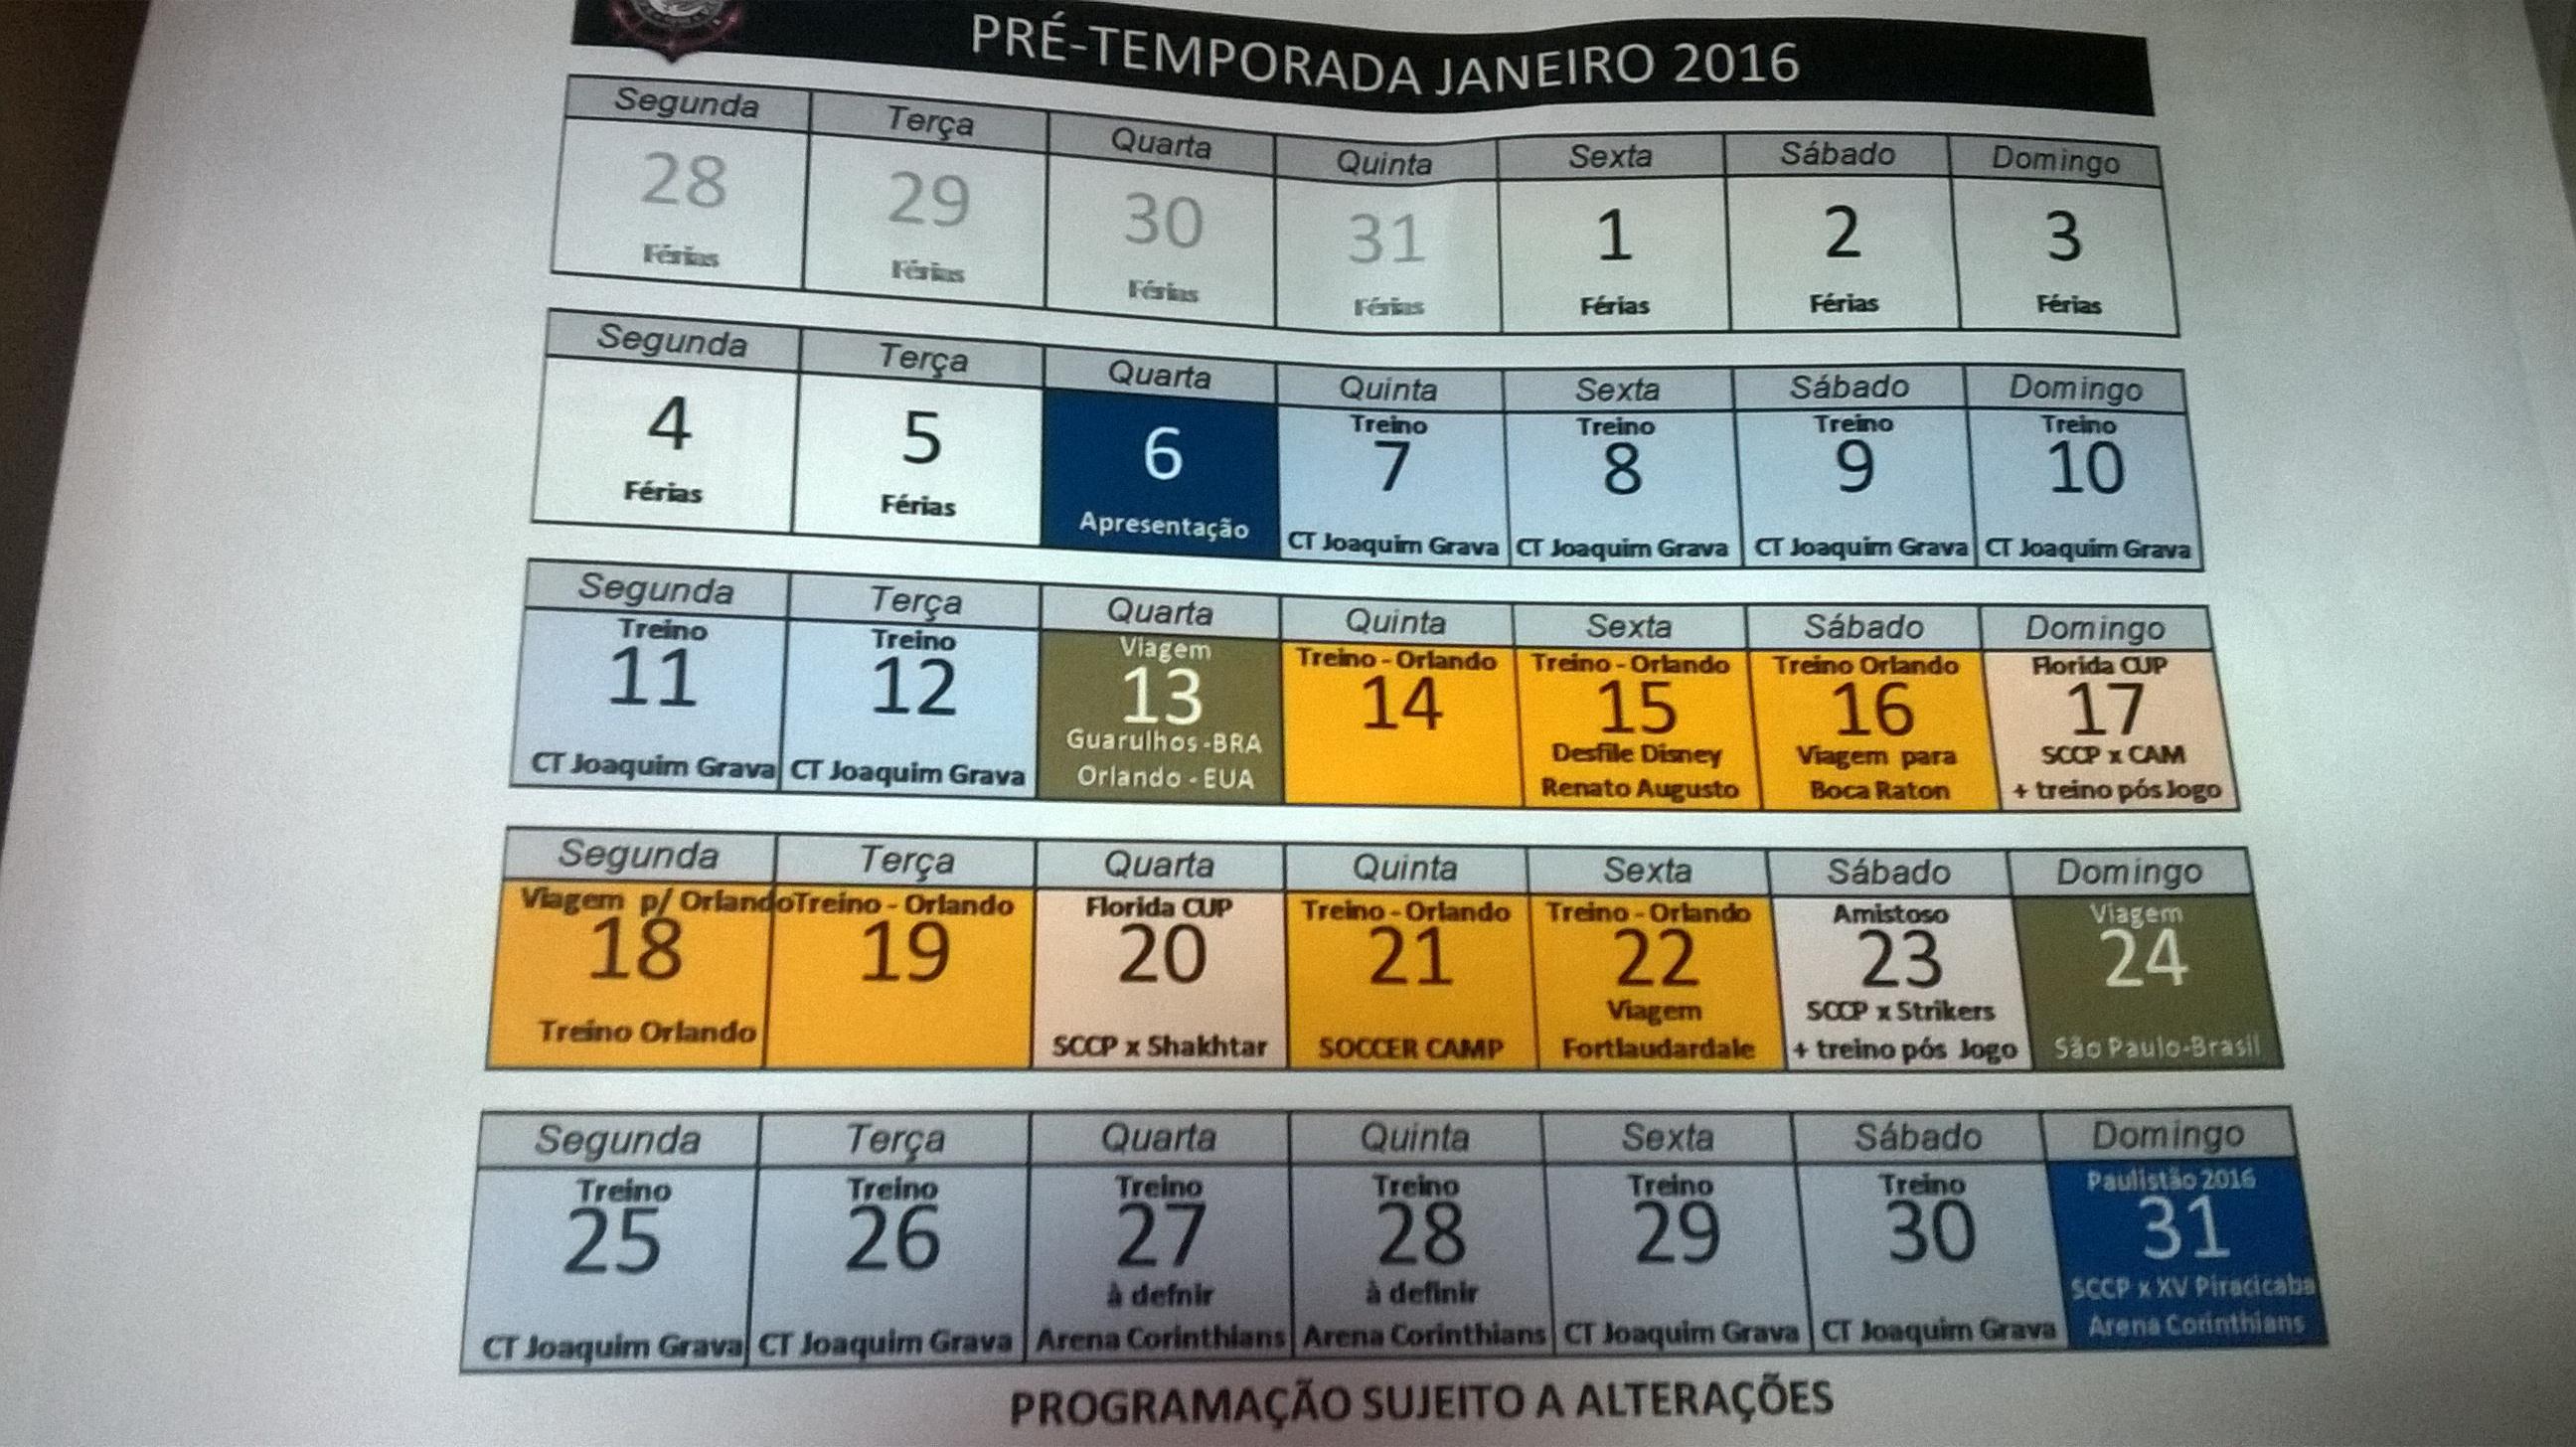 Programação do Timão para janeiro de 2016